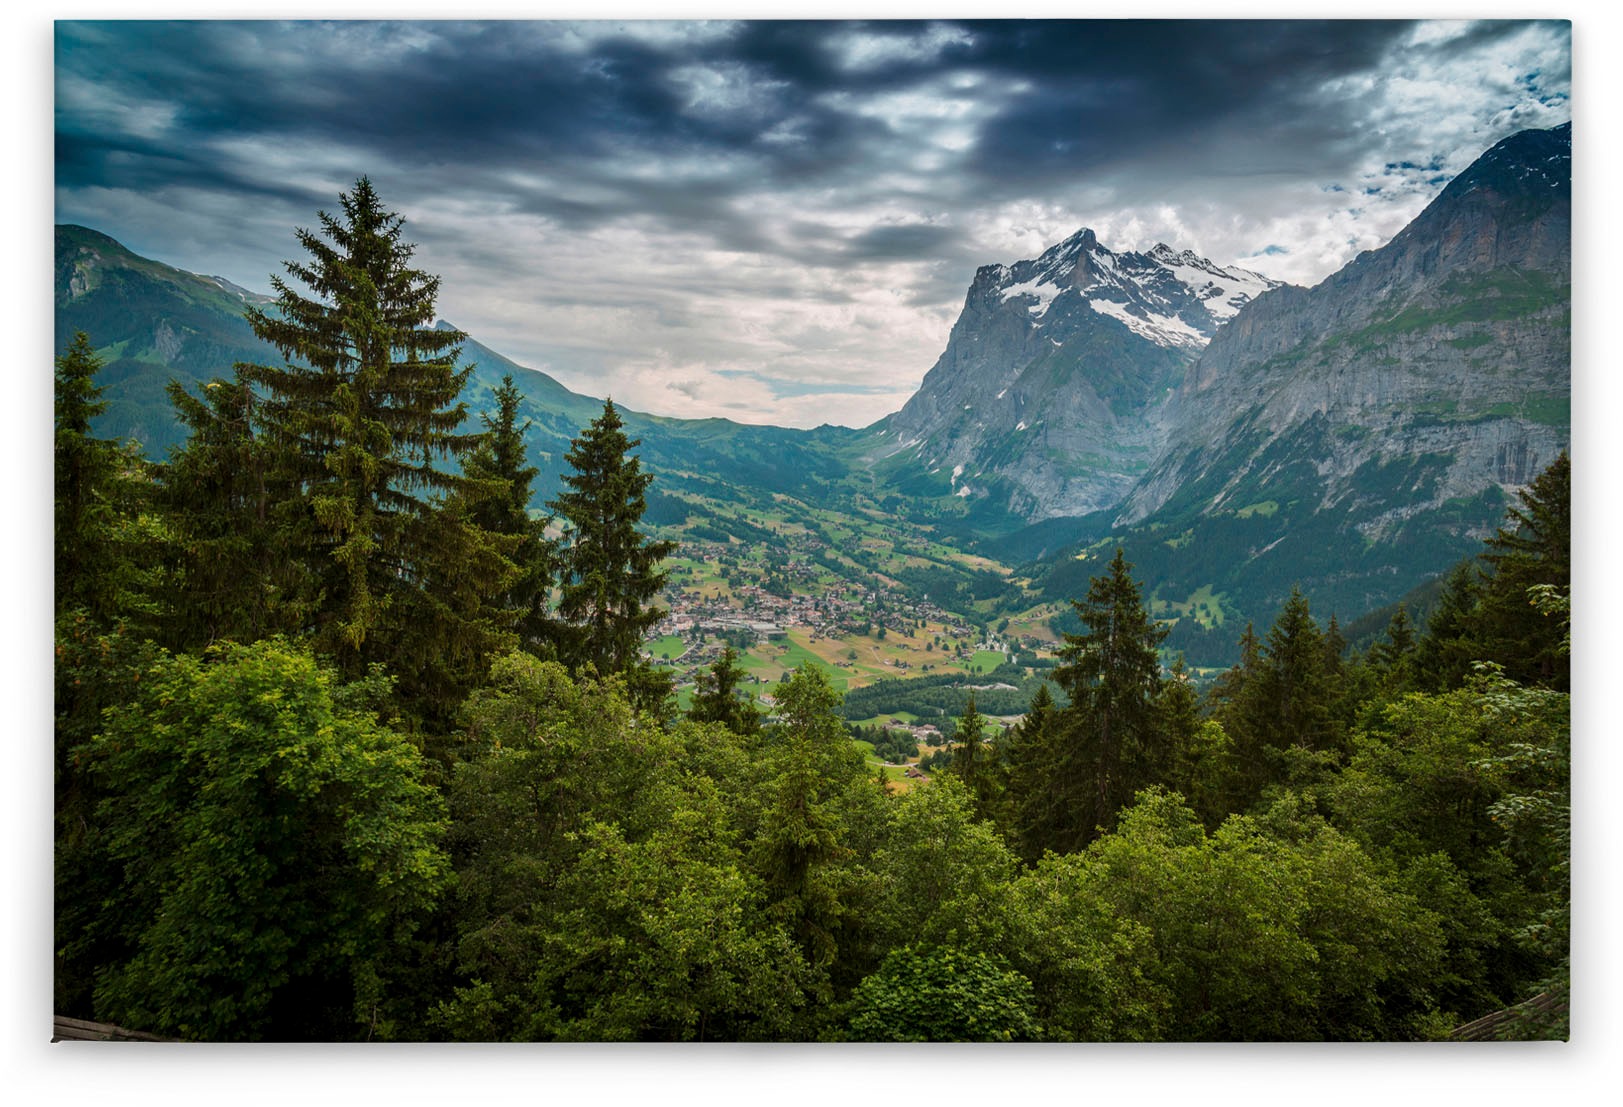 A.S. Création Leinwandbild »Mountain Views«, Landschaft, (1 St.), Bild Landschaft Bäume Gebirge Keilrahmen